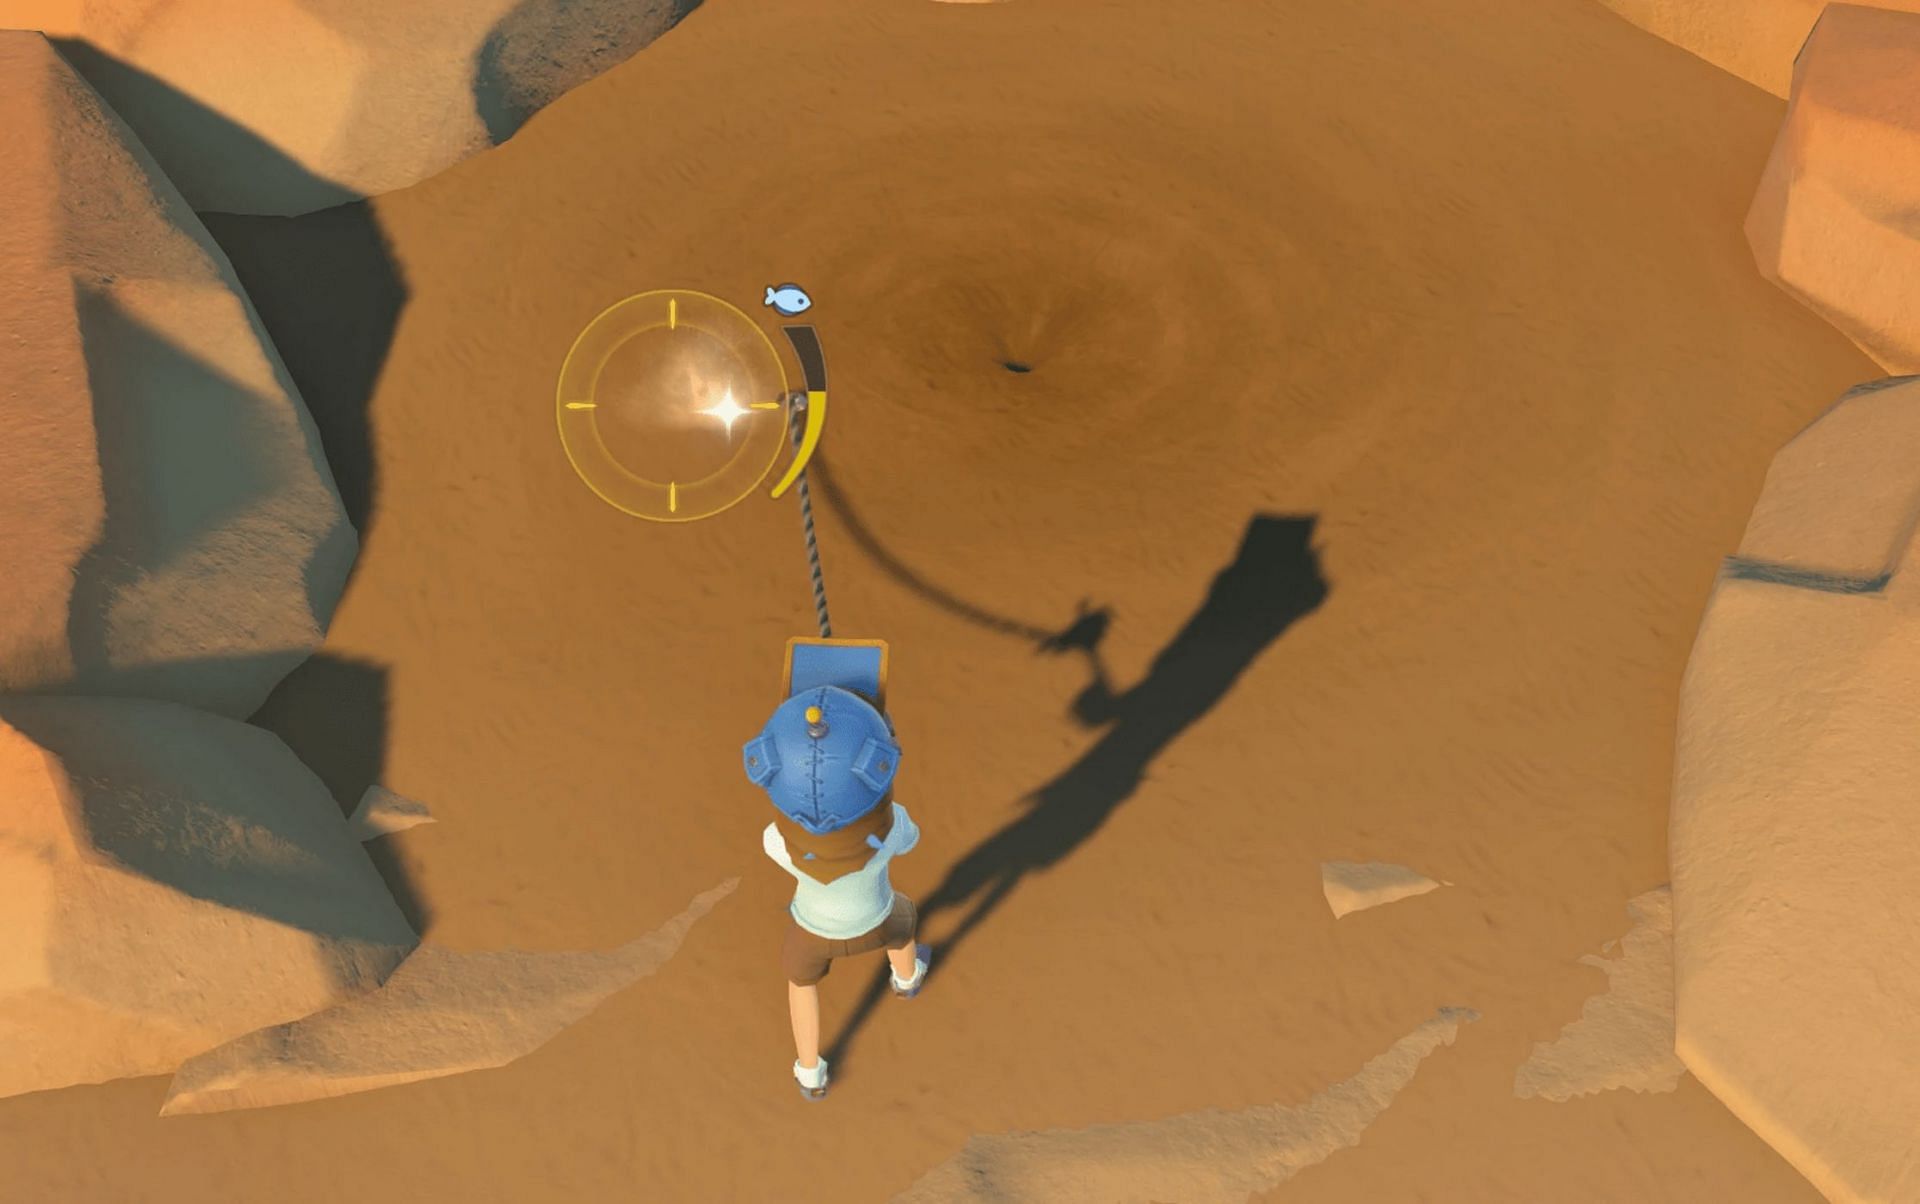 Игрок ловит рыбу на песке в месте для рыбалки, похожем на воронку (изображение от Pathea)